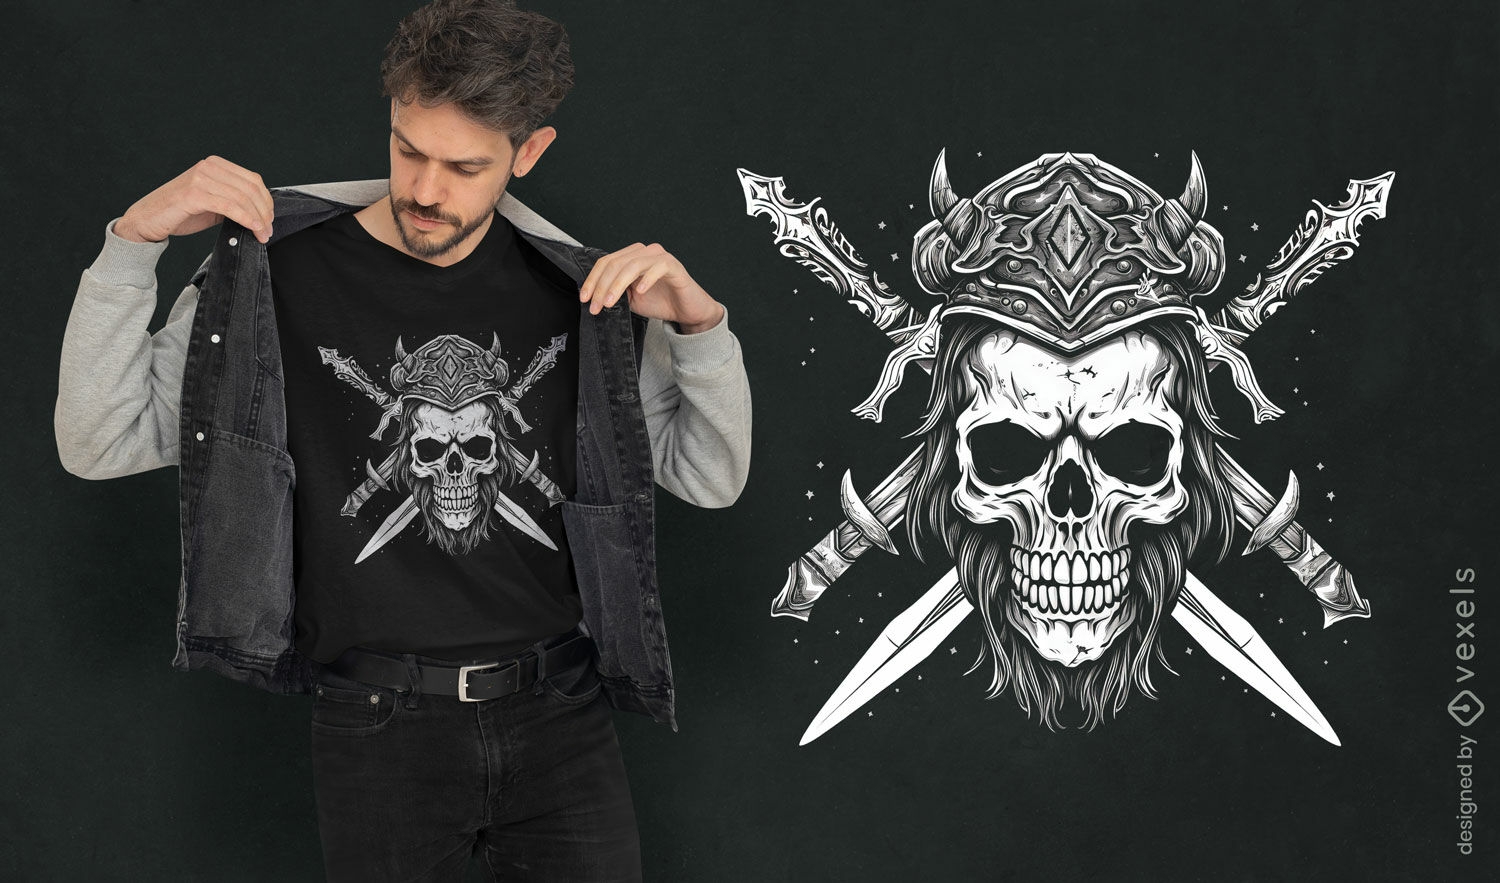 Diseño de camiseta con gráfico de calavera de guerrero.